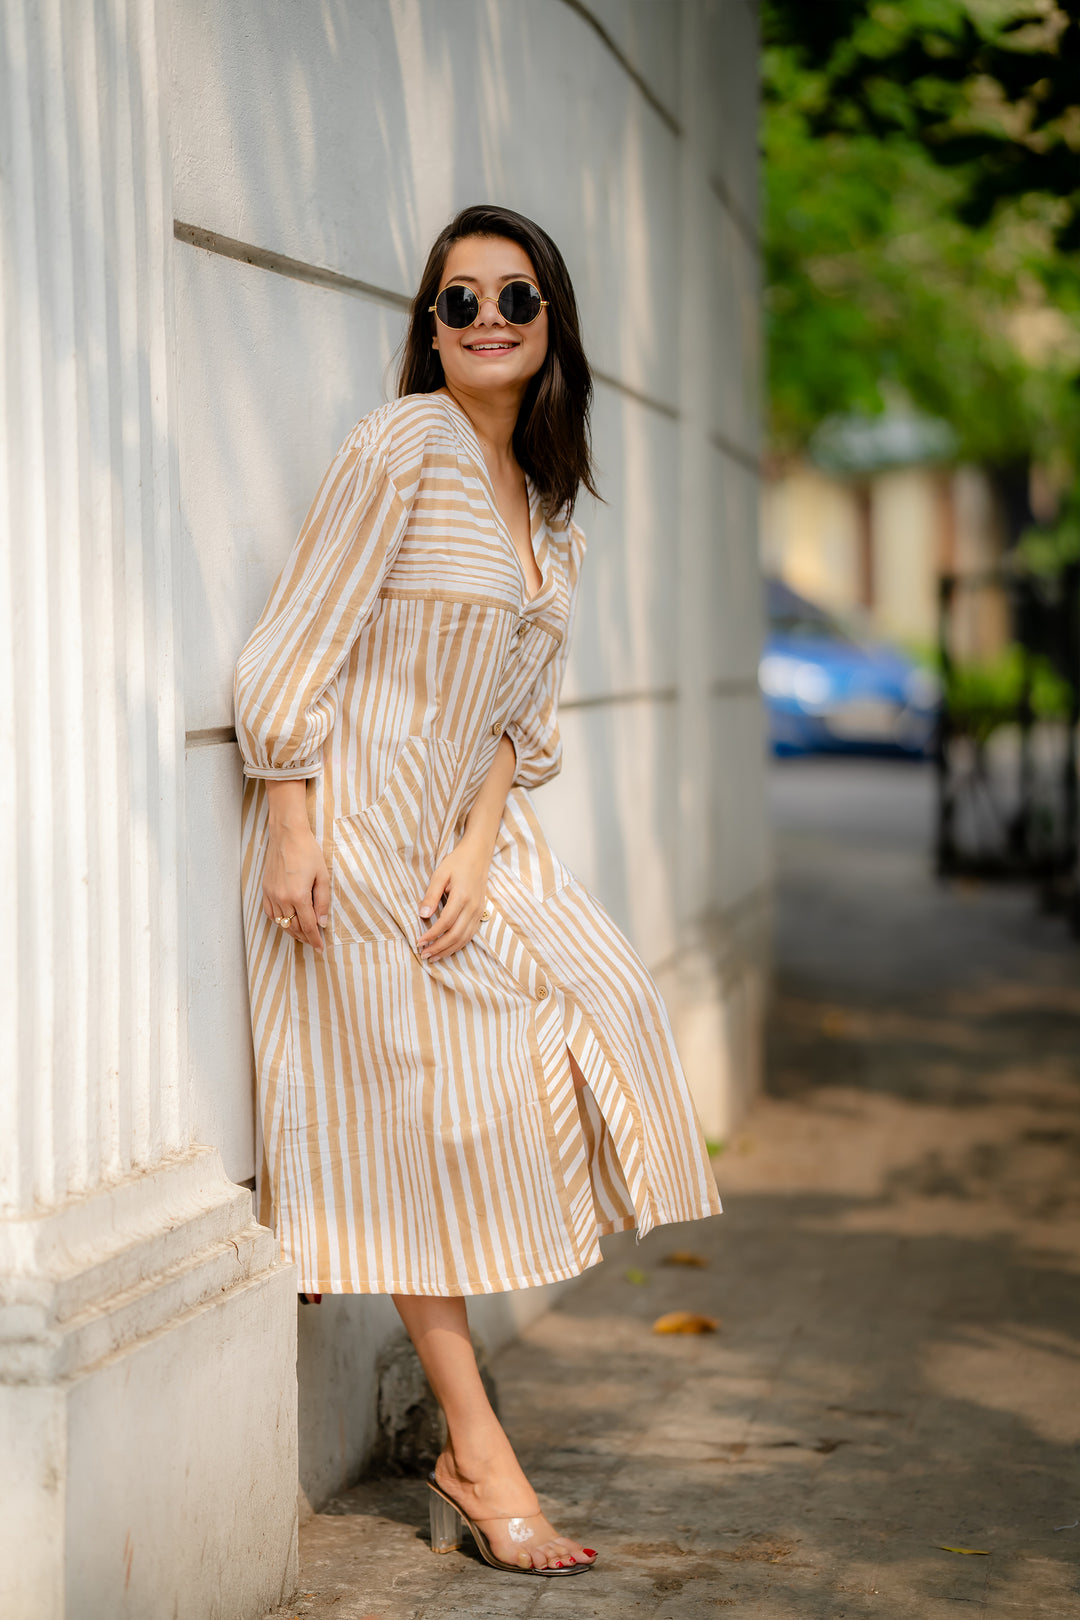 Smiling Cocoa Stripe Dress